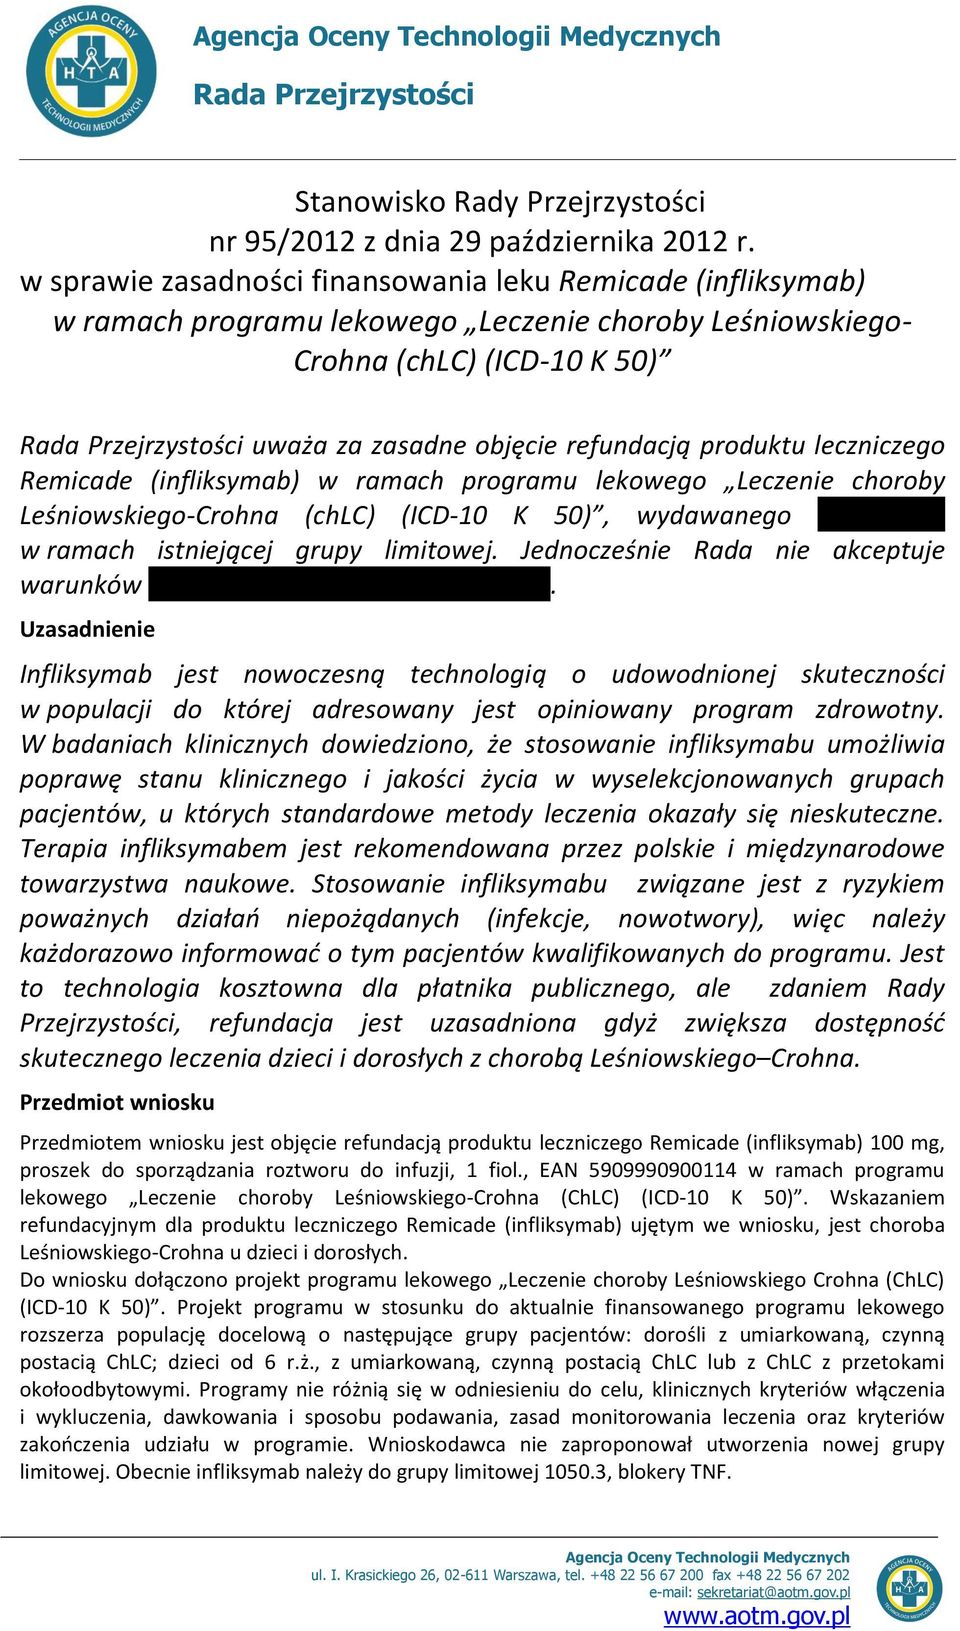 refundacją produktu leczniczego Remicade (infliksymab) w ramach programu lekowego Leczenie choroby Leśniowskiego-Crohna (chlc) (ICD-10 K 50), wydawanego w ramach istniejącej grupy limitowej.